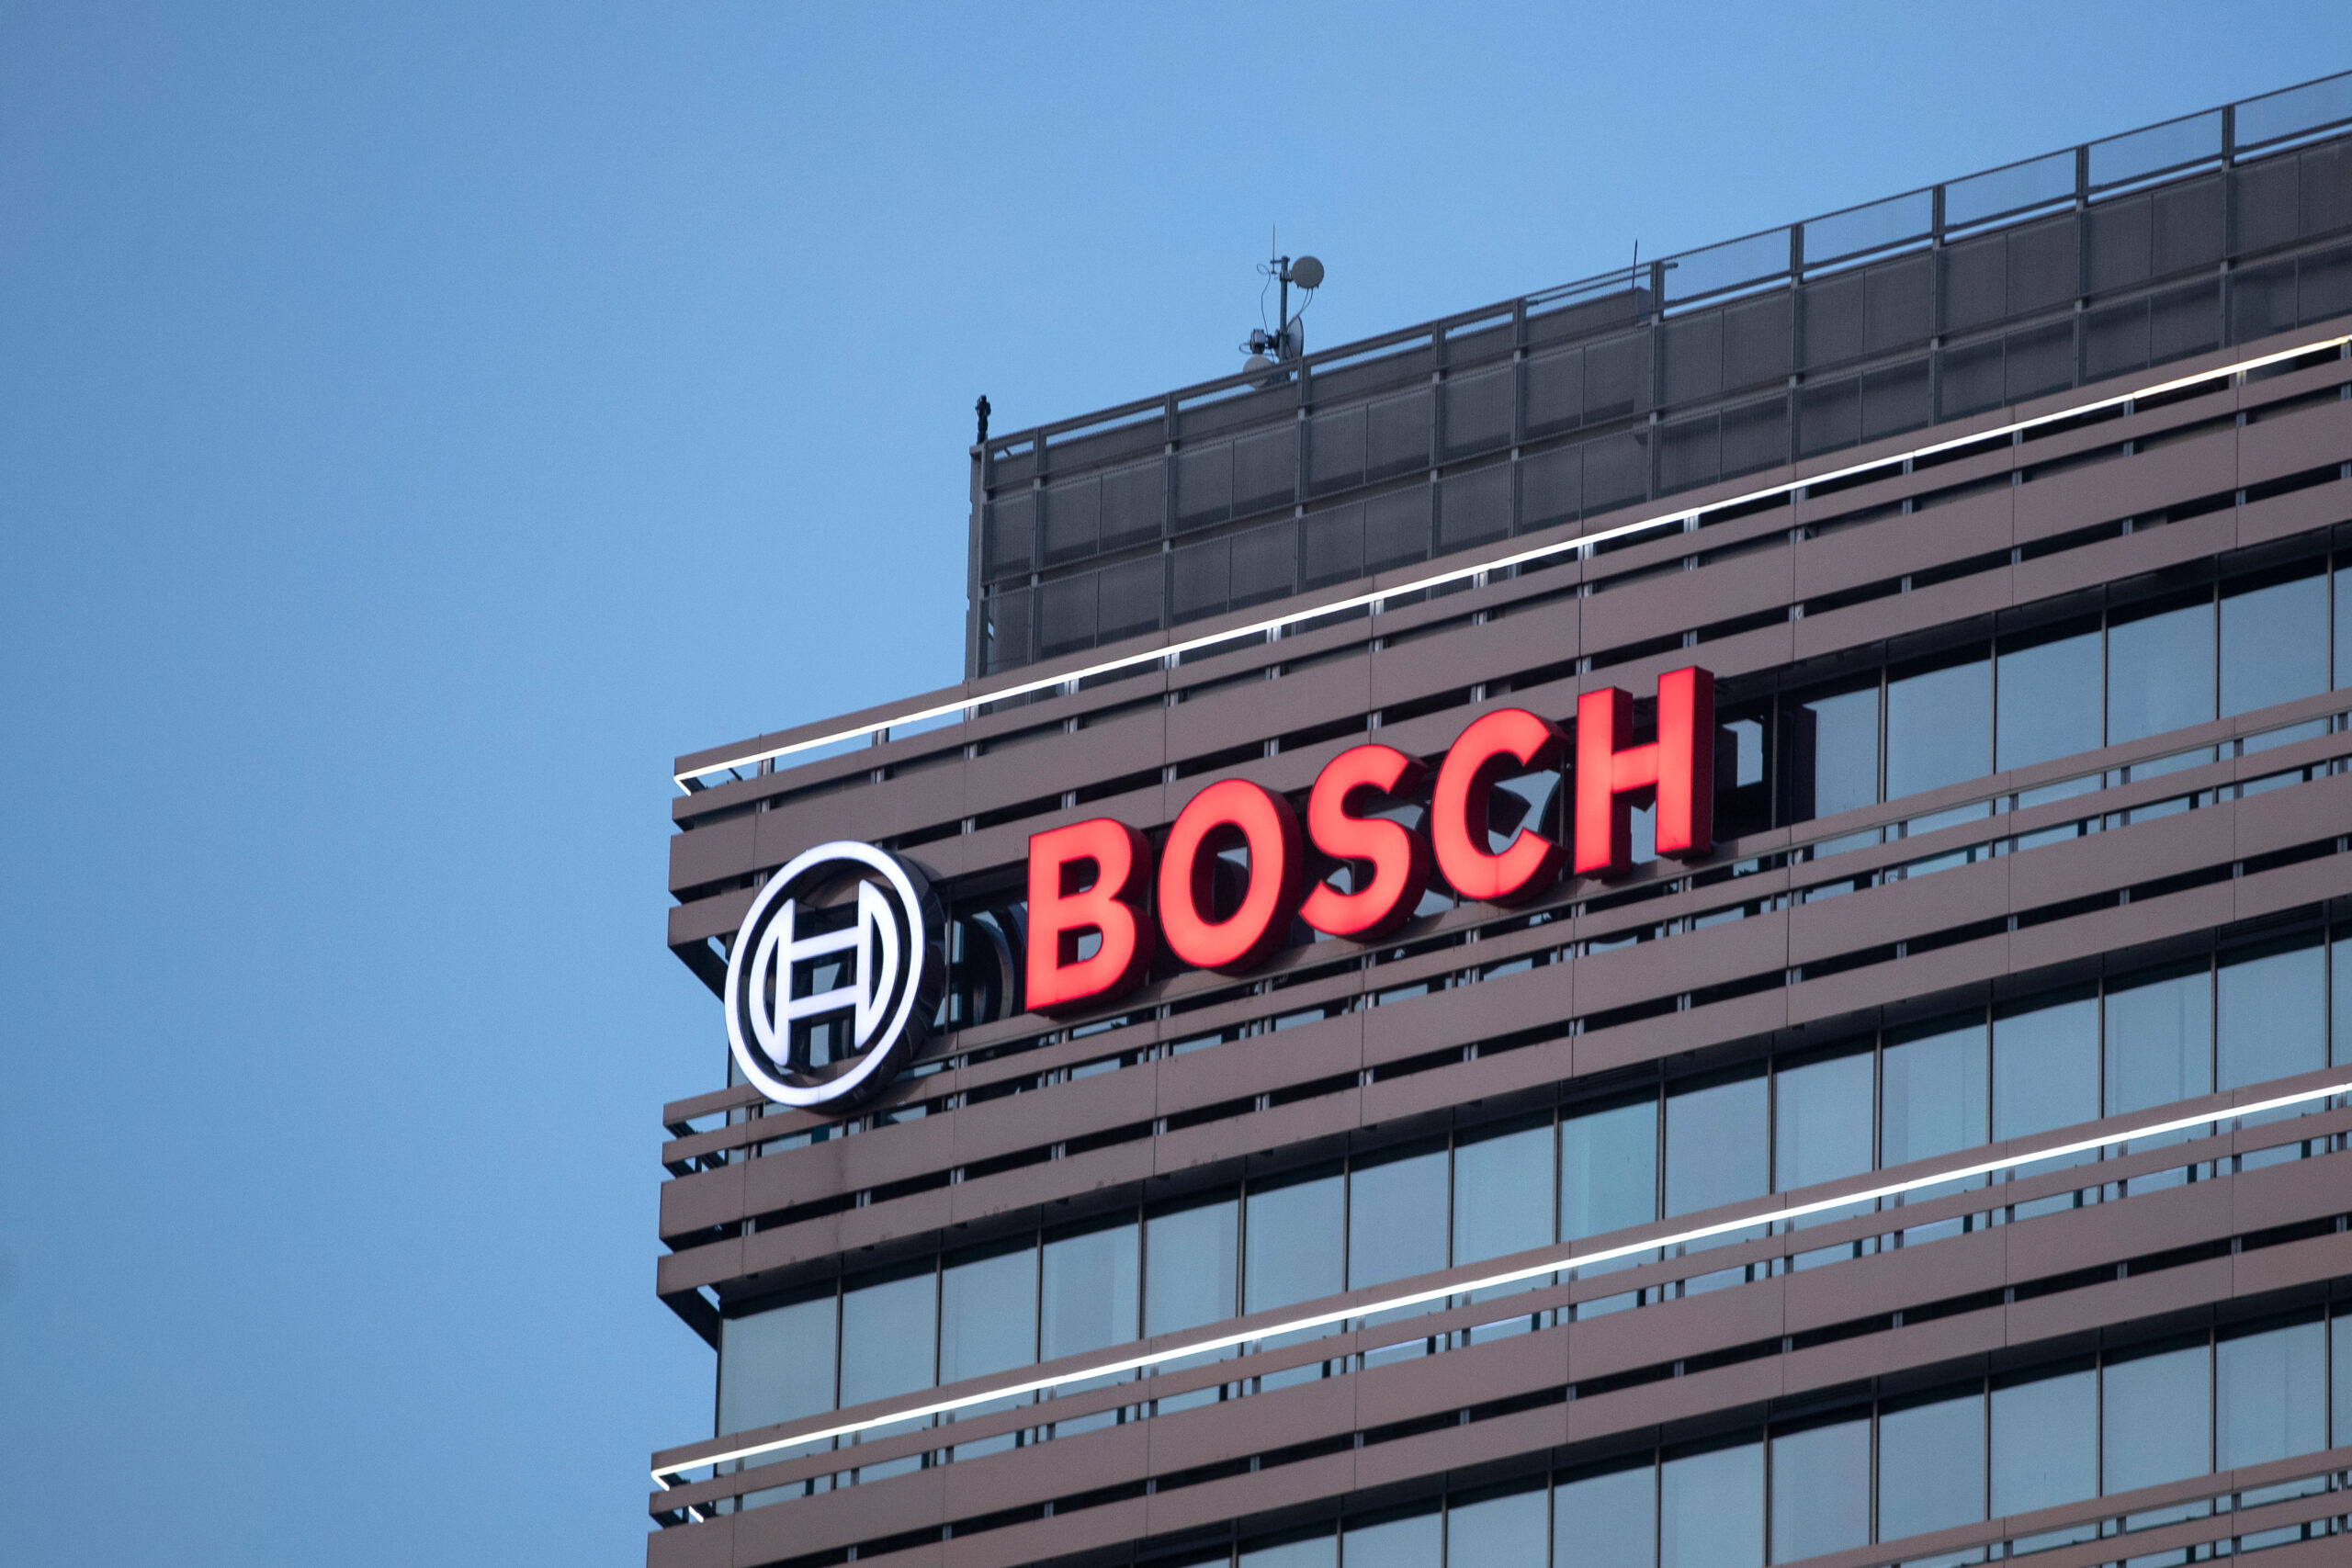 Bosch, due miliardi di euro per riqualificare dipendenti verso auto elettrica